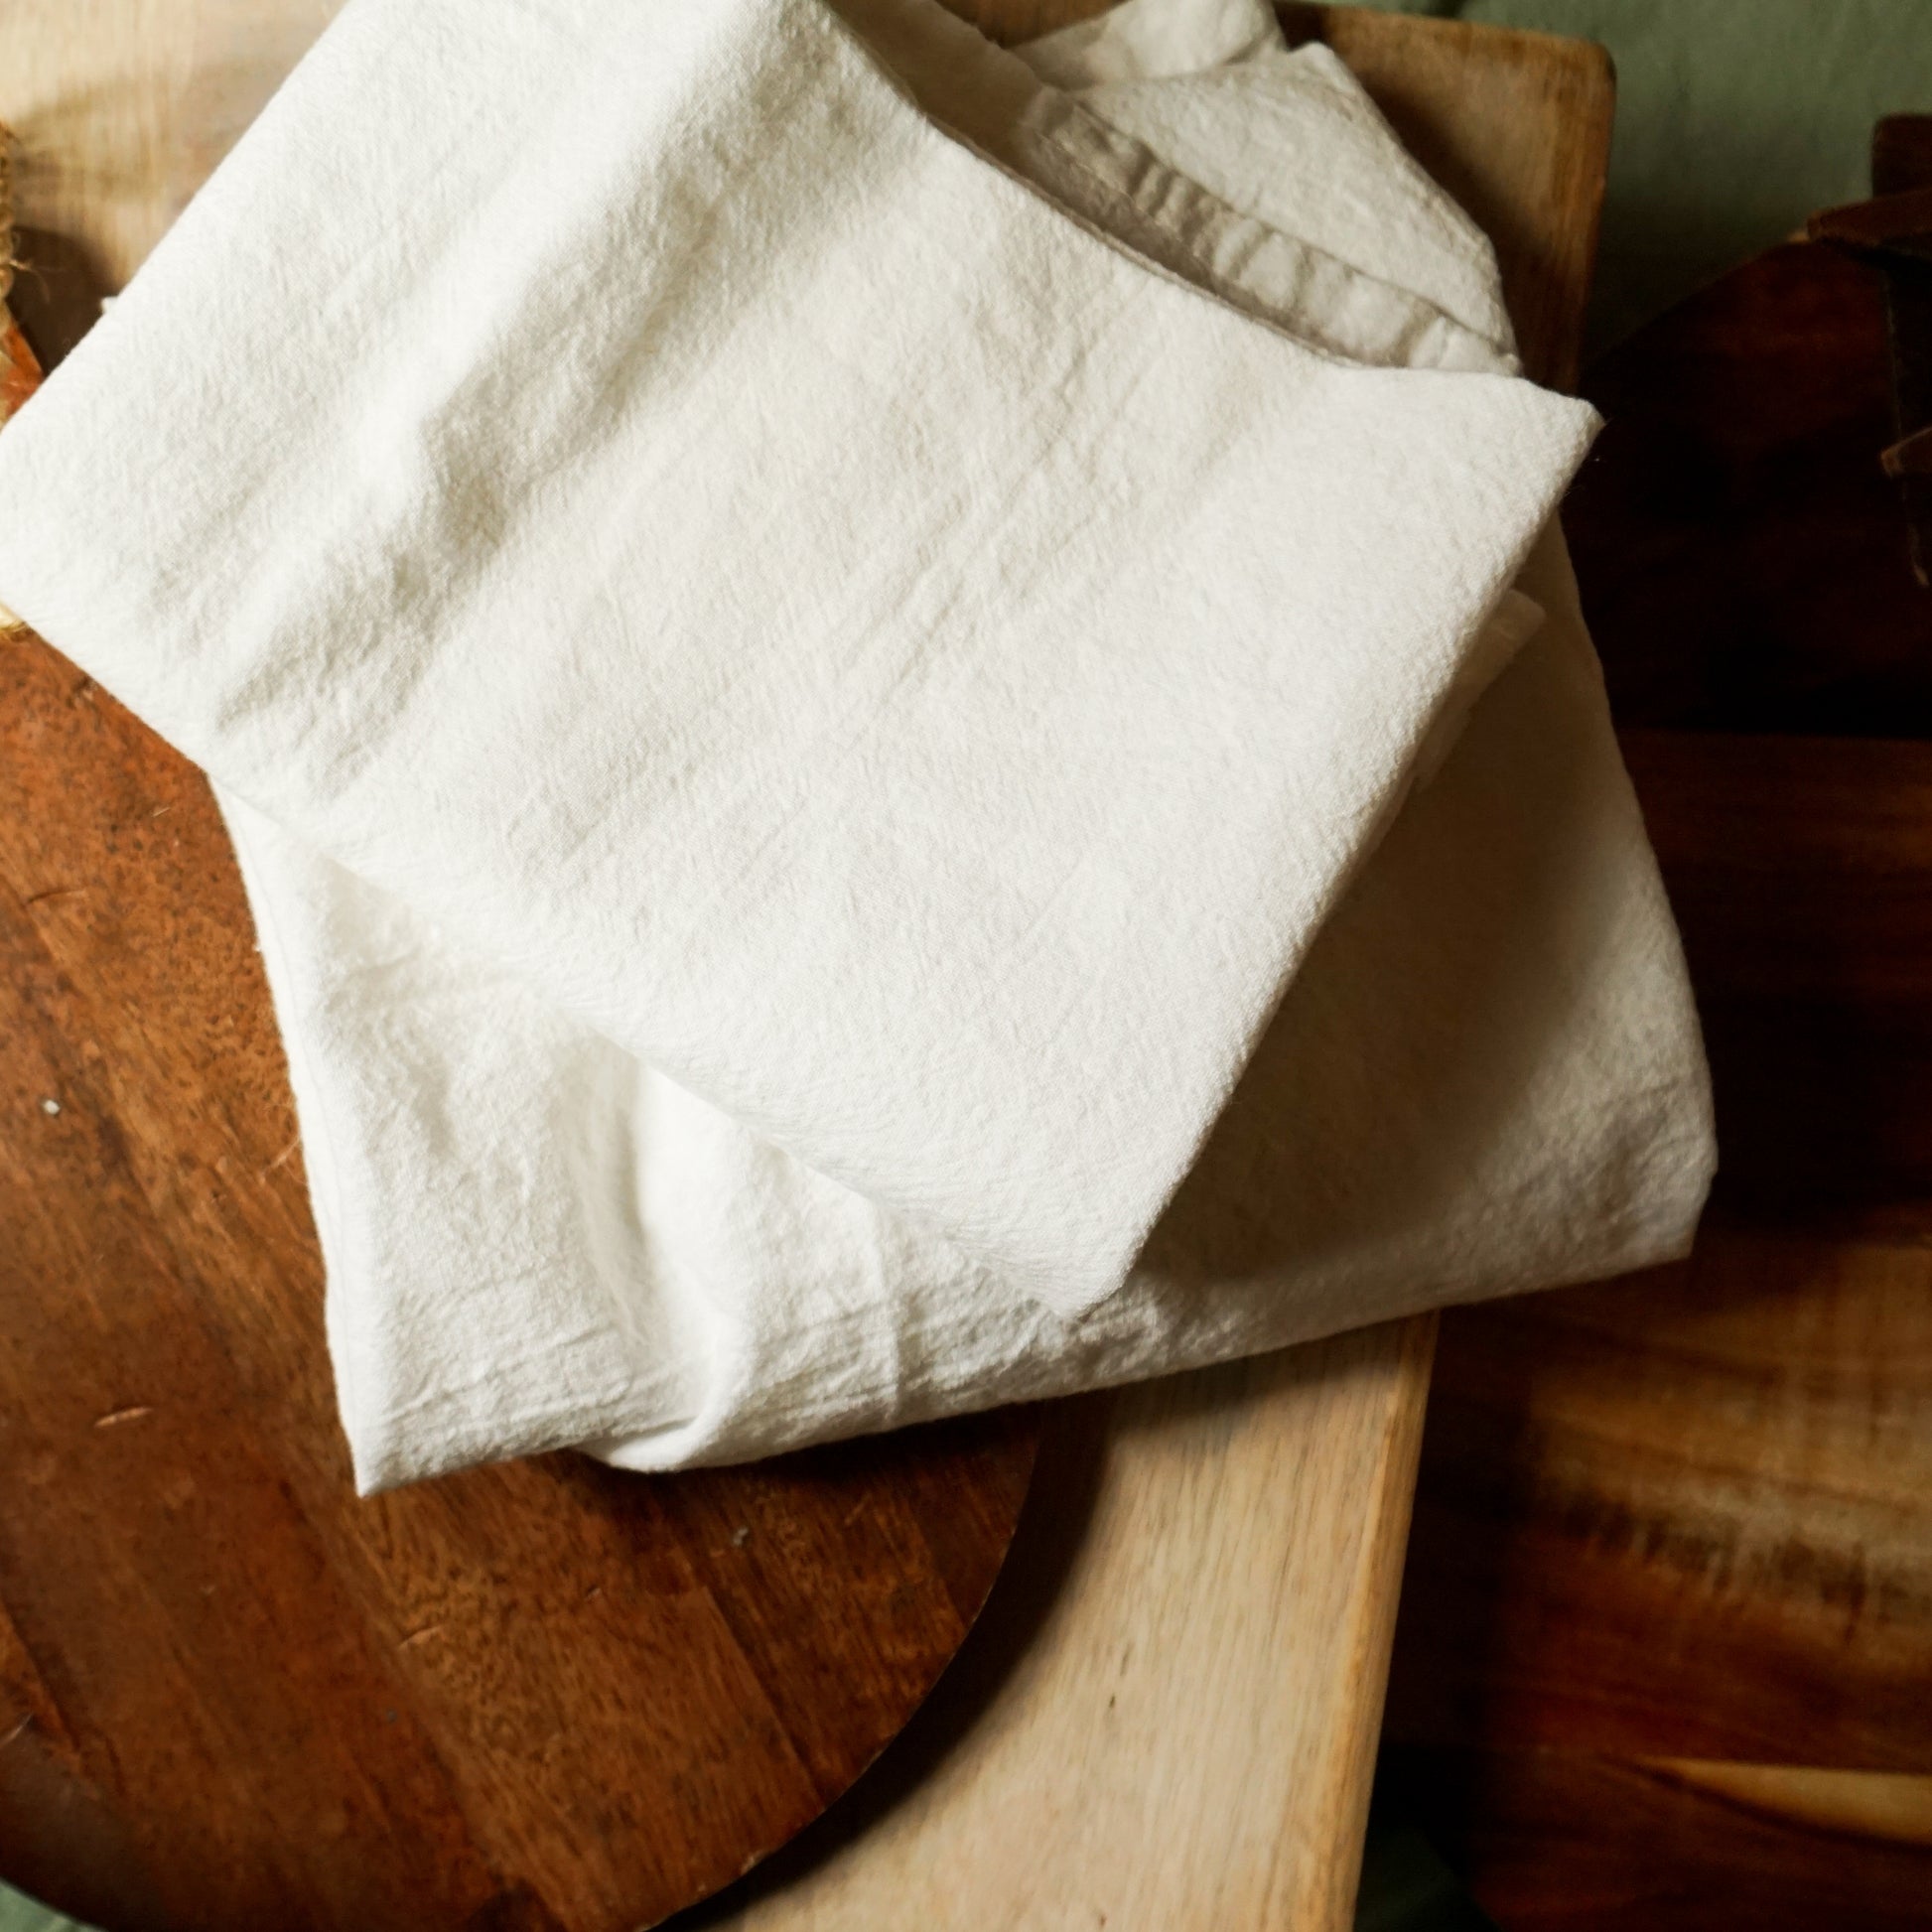 Flour Sack Kitchen Towel 3-Pack – Shop Our Favorites